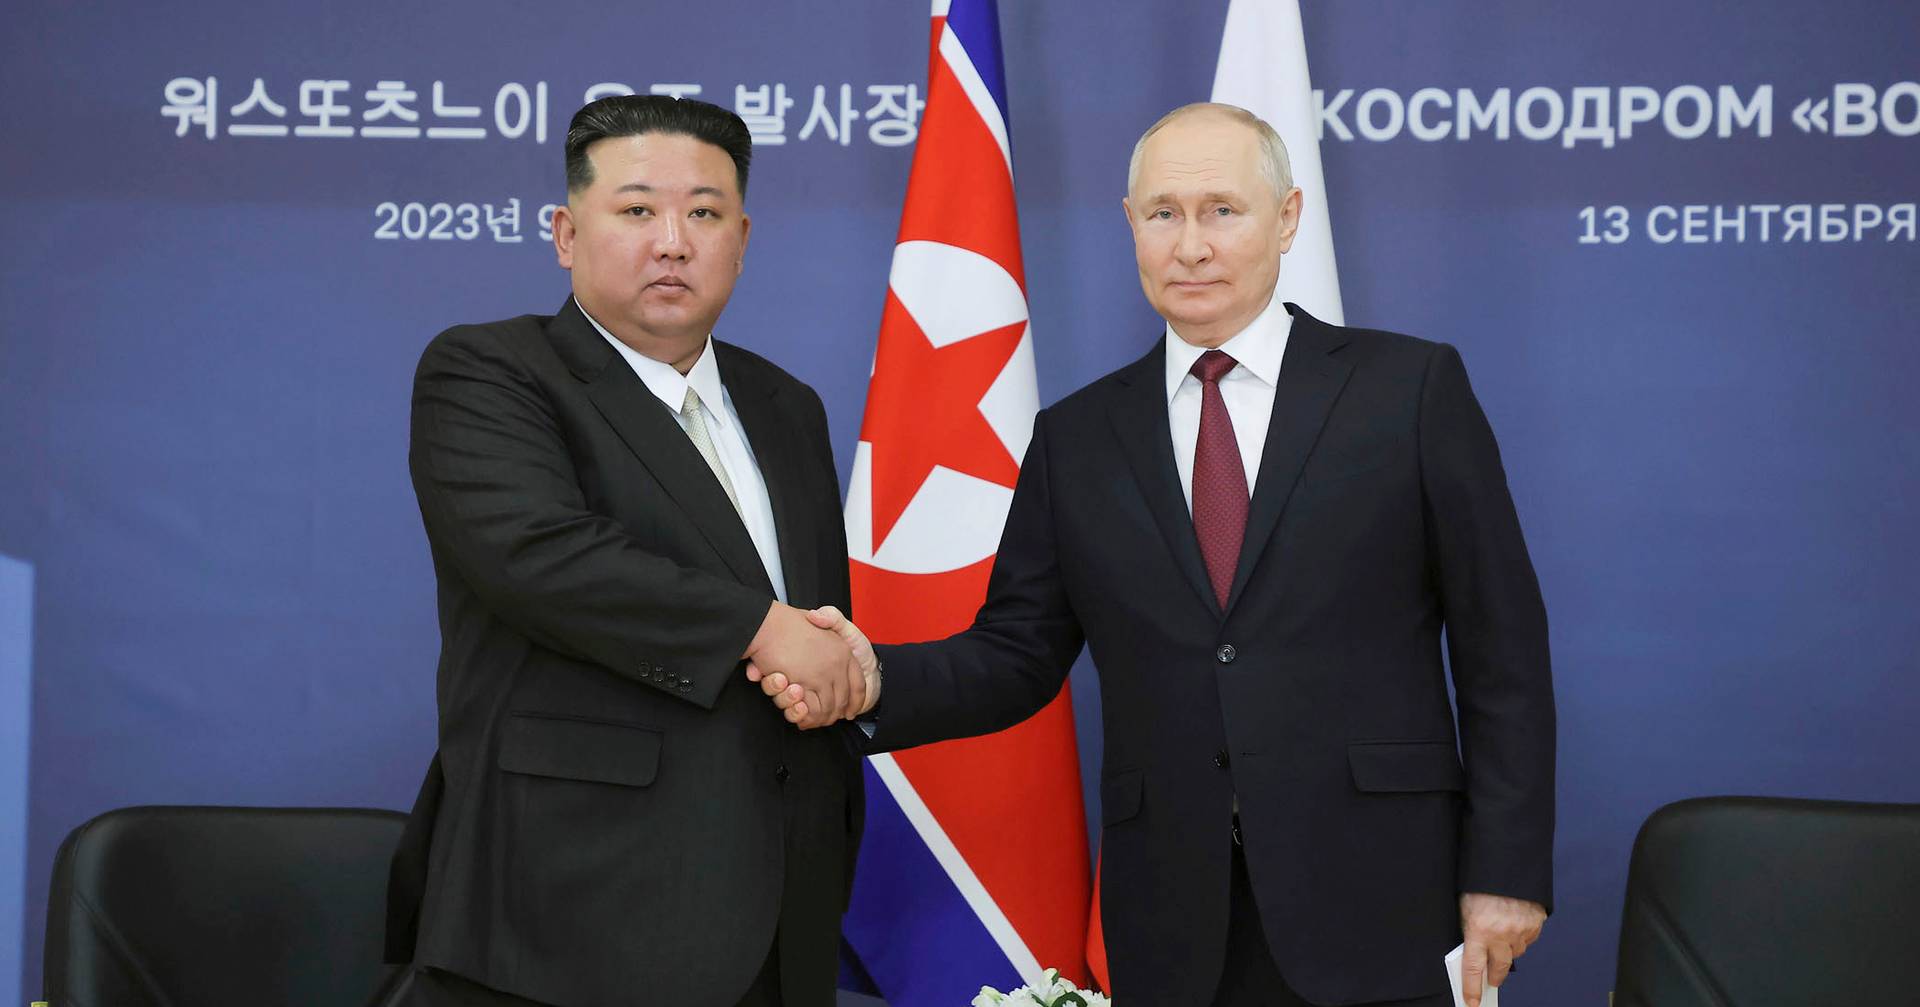 Se espera que Putin visite pronto Corea del Norte